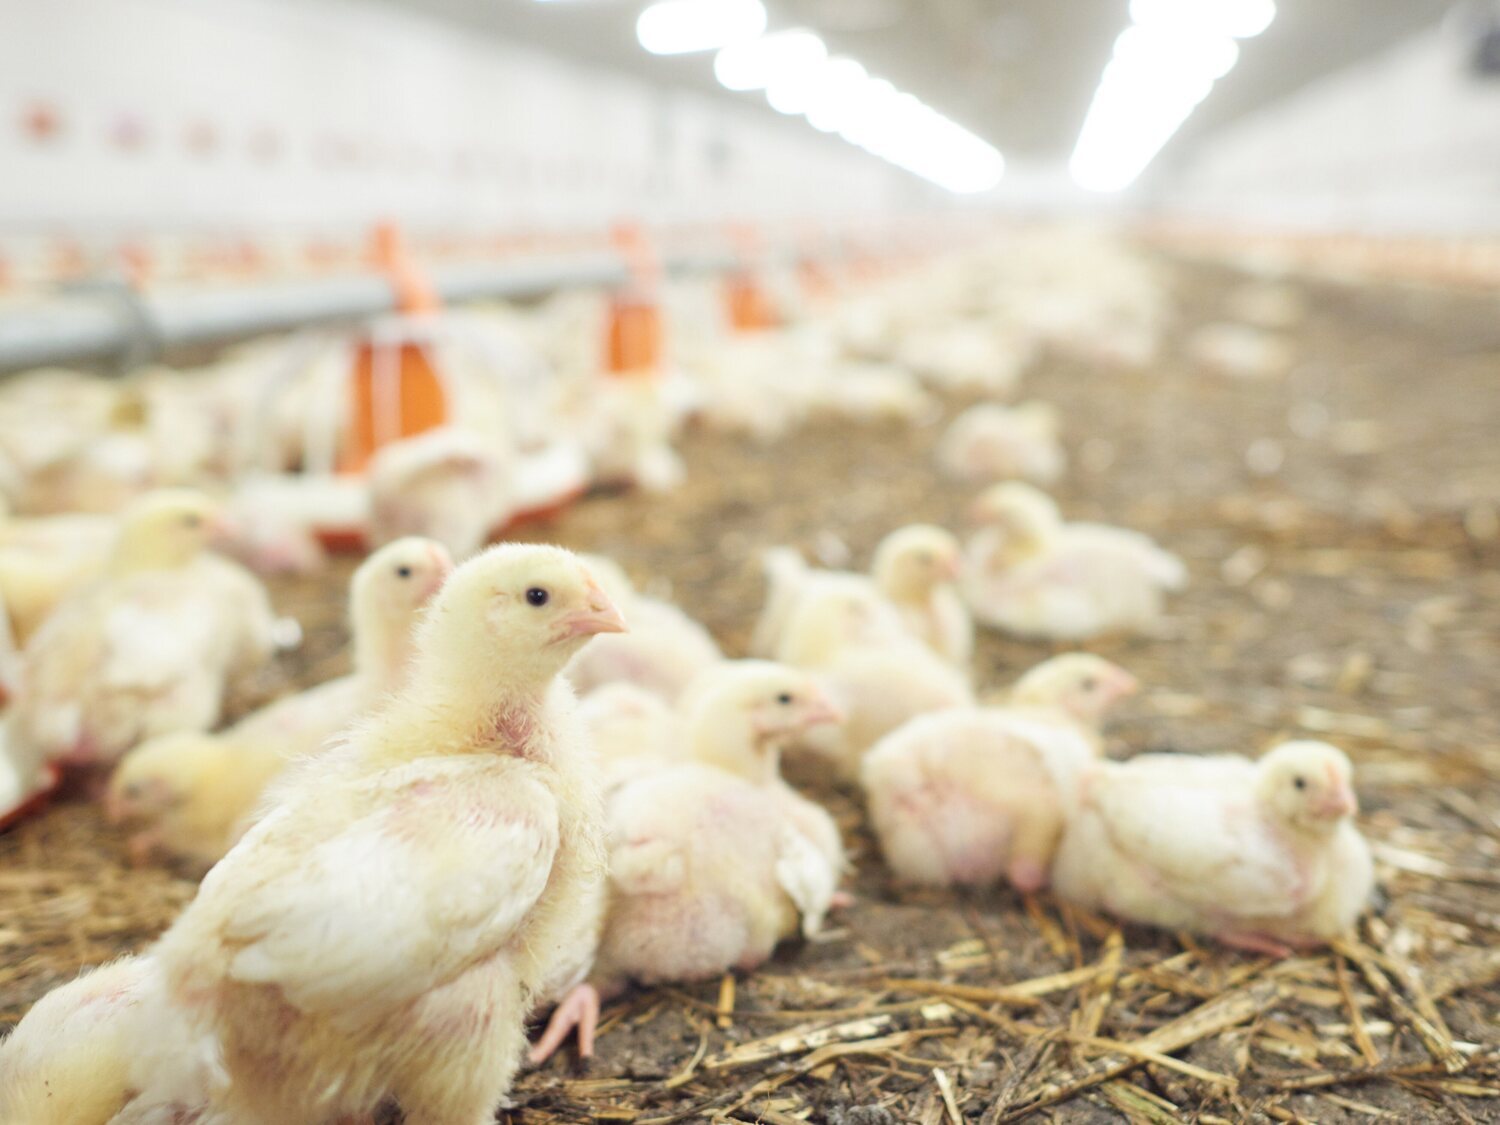 Una ONG denuncia maltratos en una granja avícola asociada al supermercado Lidl